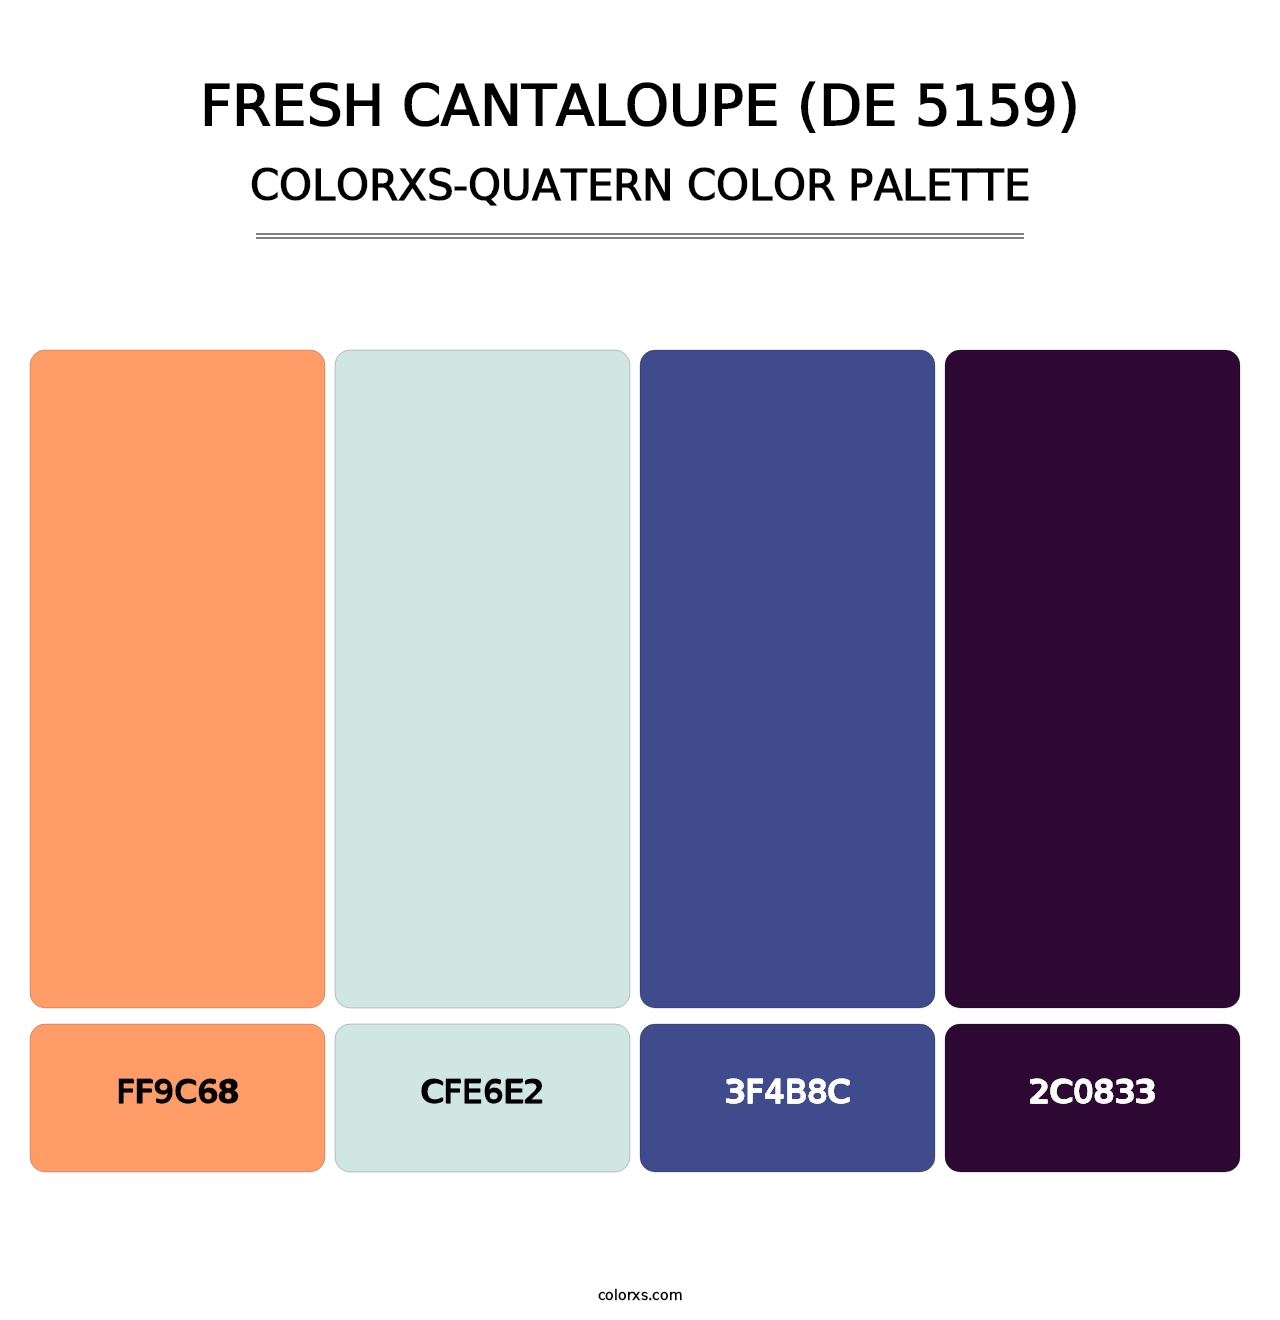 Fresh Cantaloupe (DE 5159) - Colorxs Quatern Palette